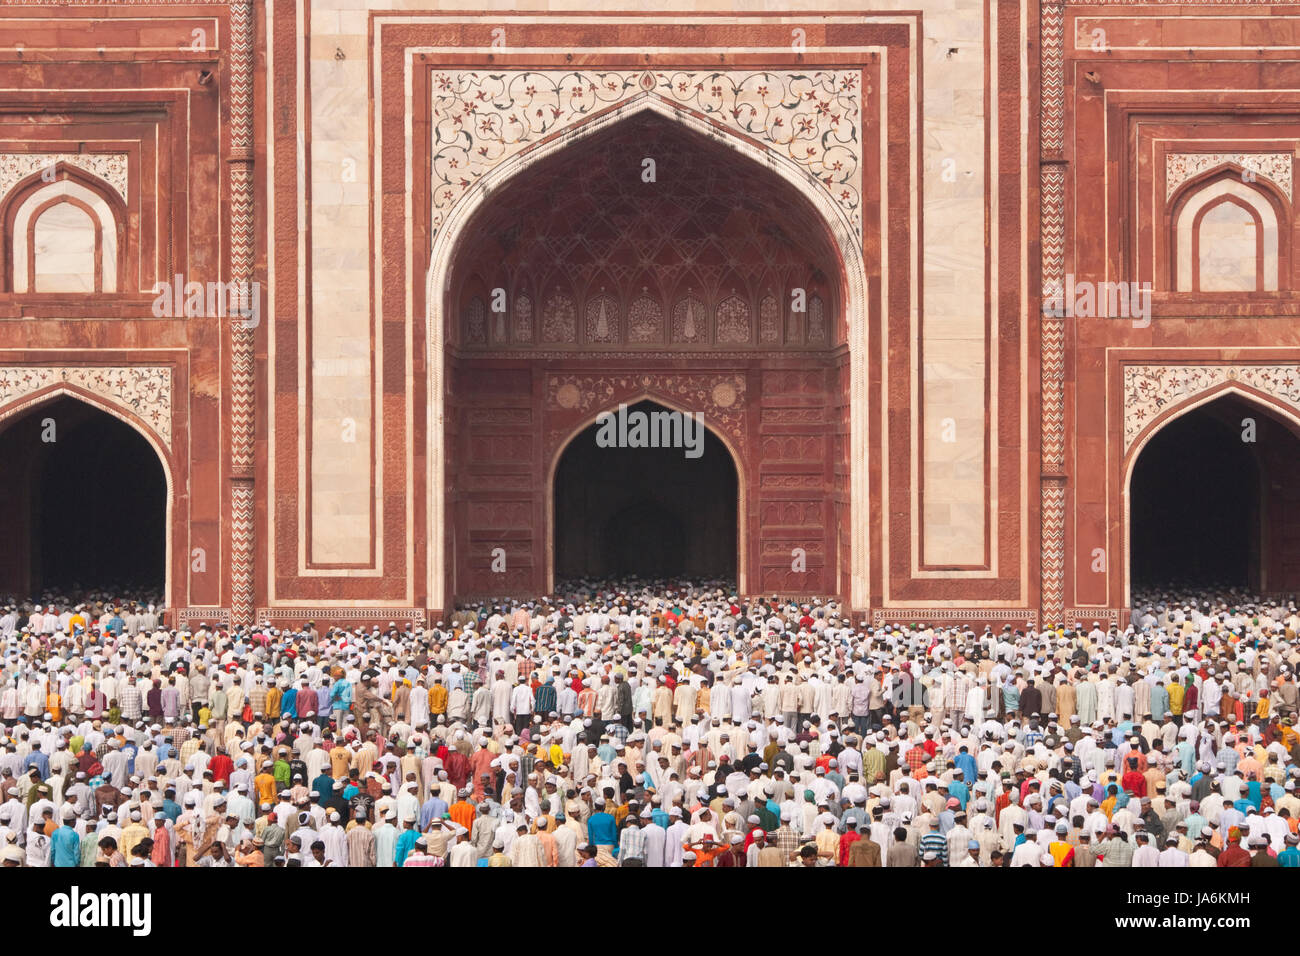 Tausende versammeln sich vor der Moschee am Taj Mahal, das moslemische Festival von Eid Ul-Fitr in Agra, Uttar Pradesh, Indien zu feiern. Stockfoto